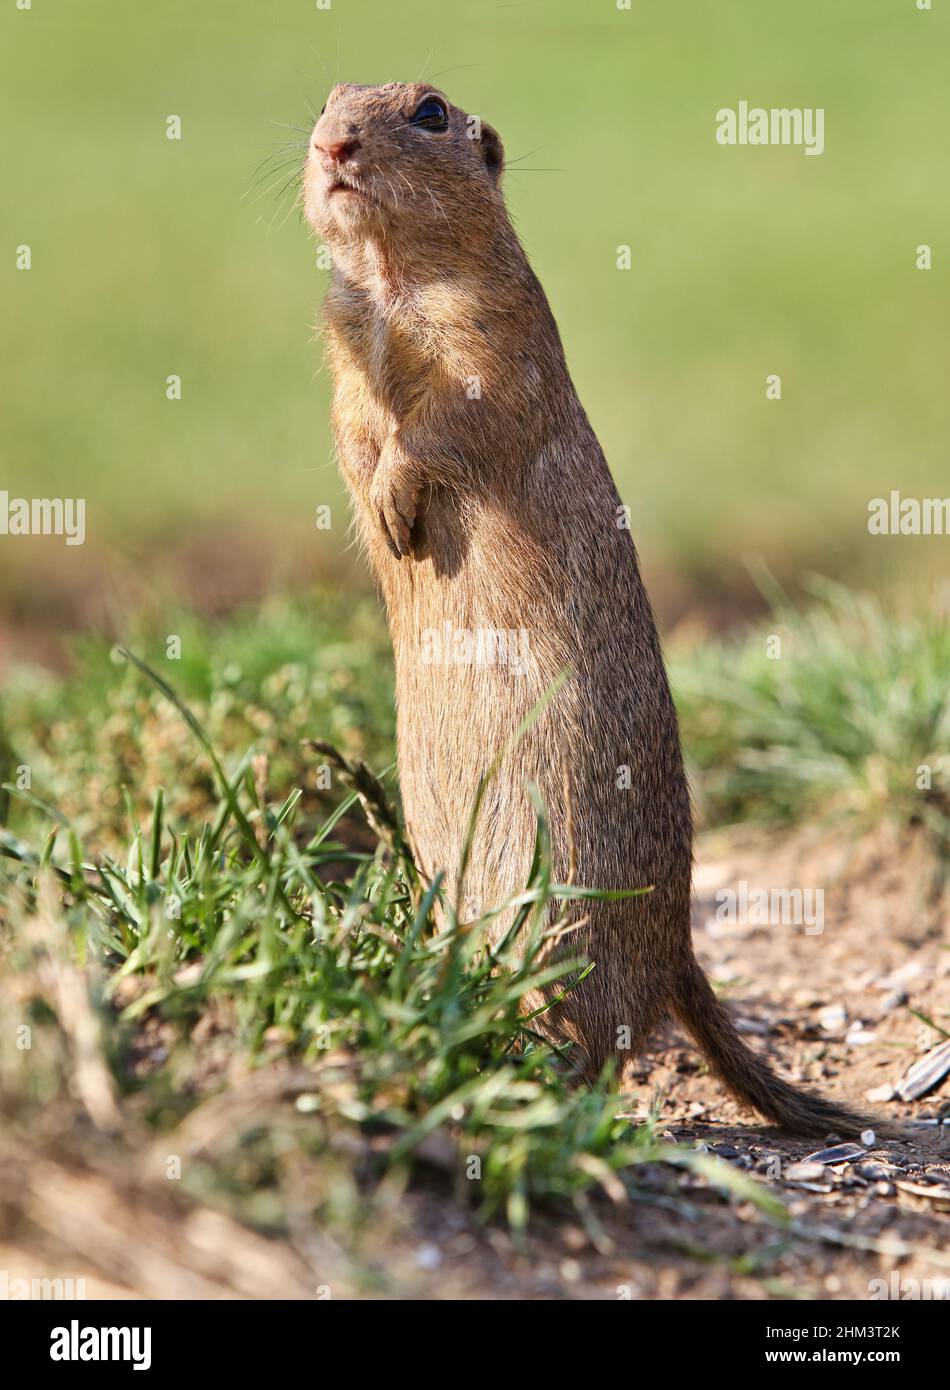 Ground squirrel Spermophilus citellus European, curious in the grass Stock Photo